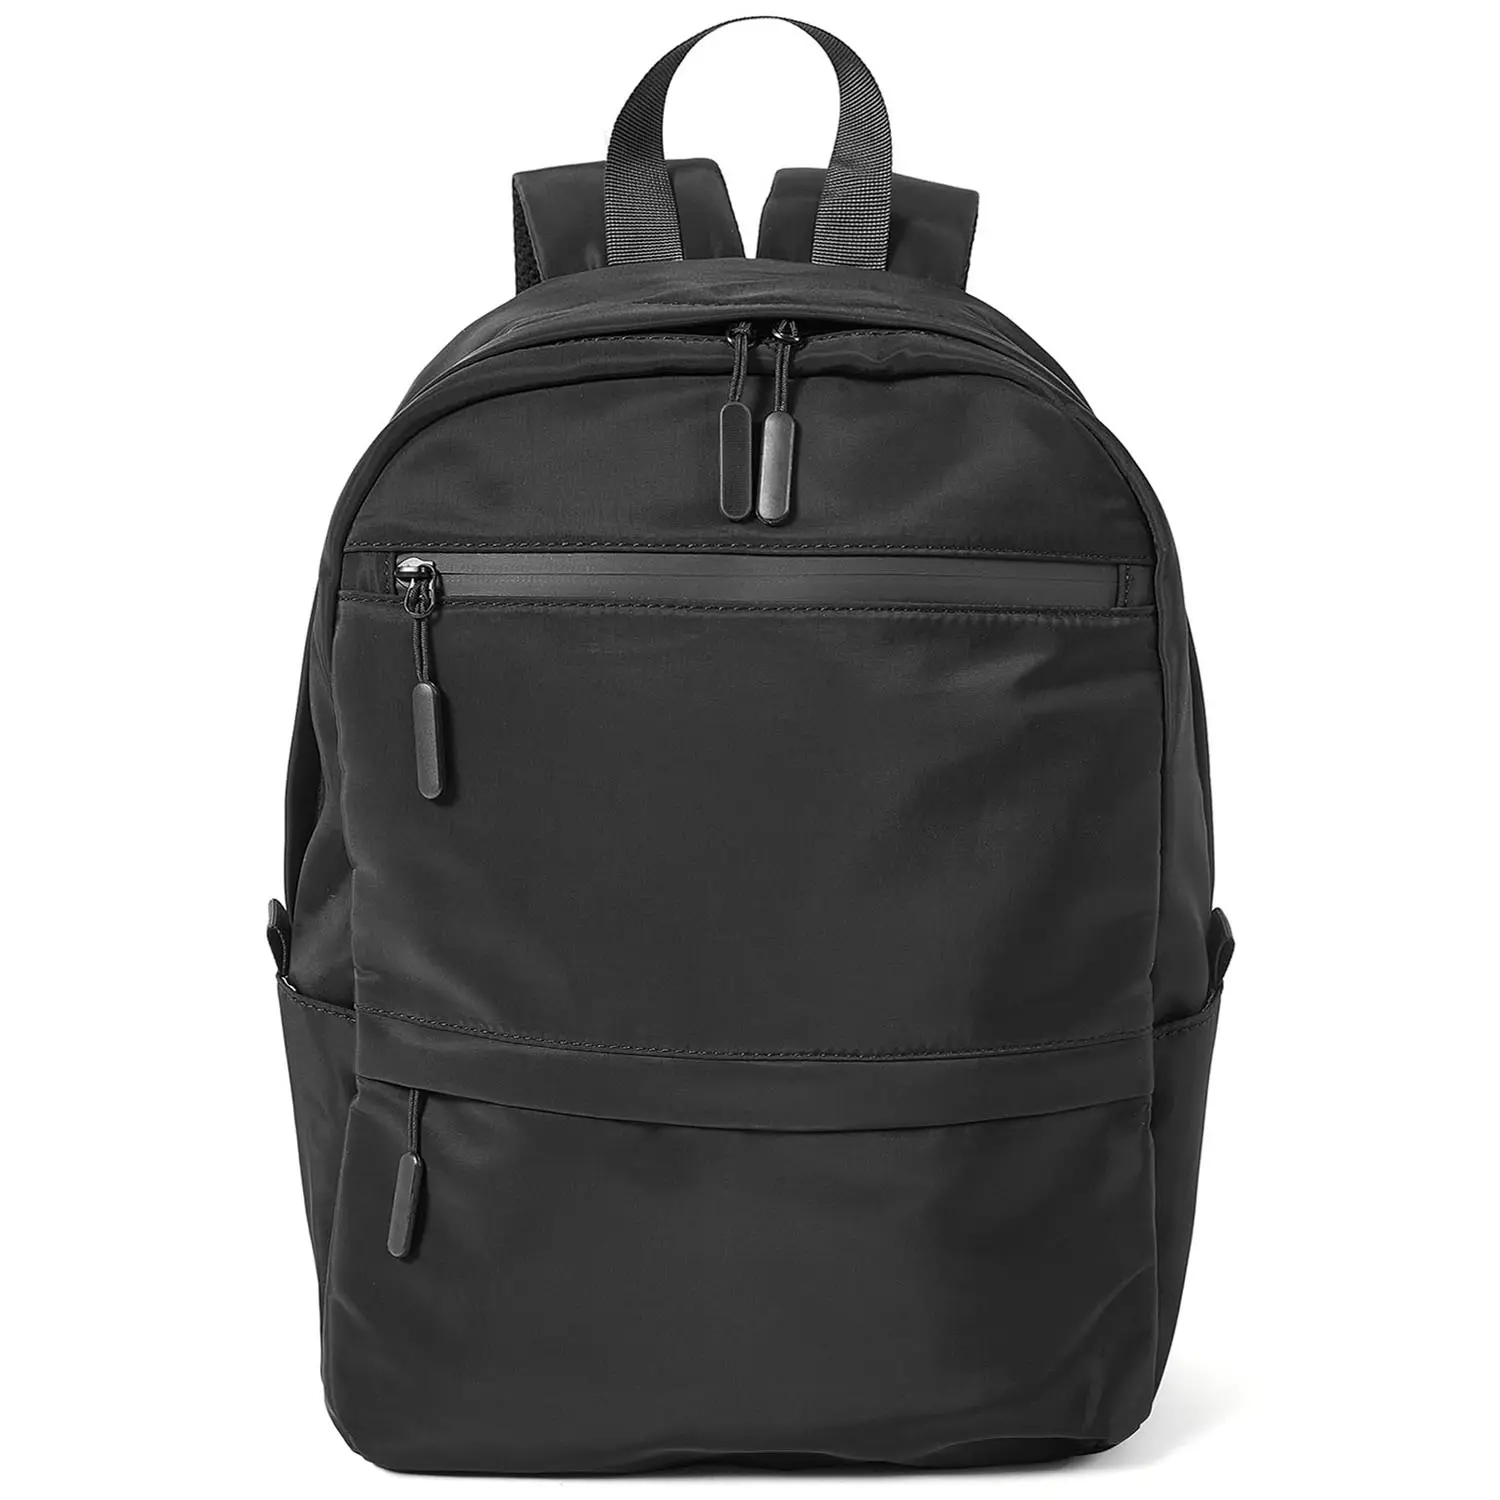 Deqi mochilas escolares de 14 polegadas, mochila esportiva para viagens, negócios, laptop, à prova d'água, bolsa casual para livros escolares